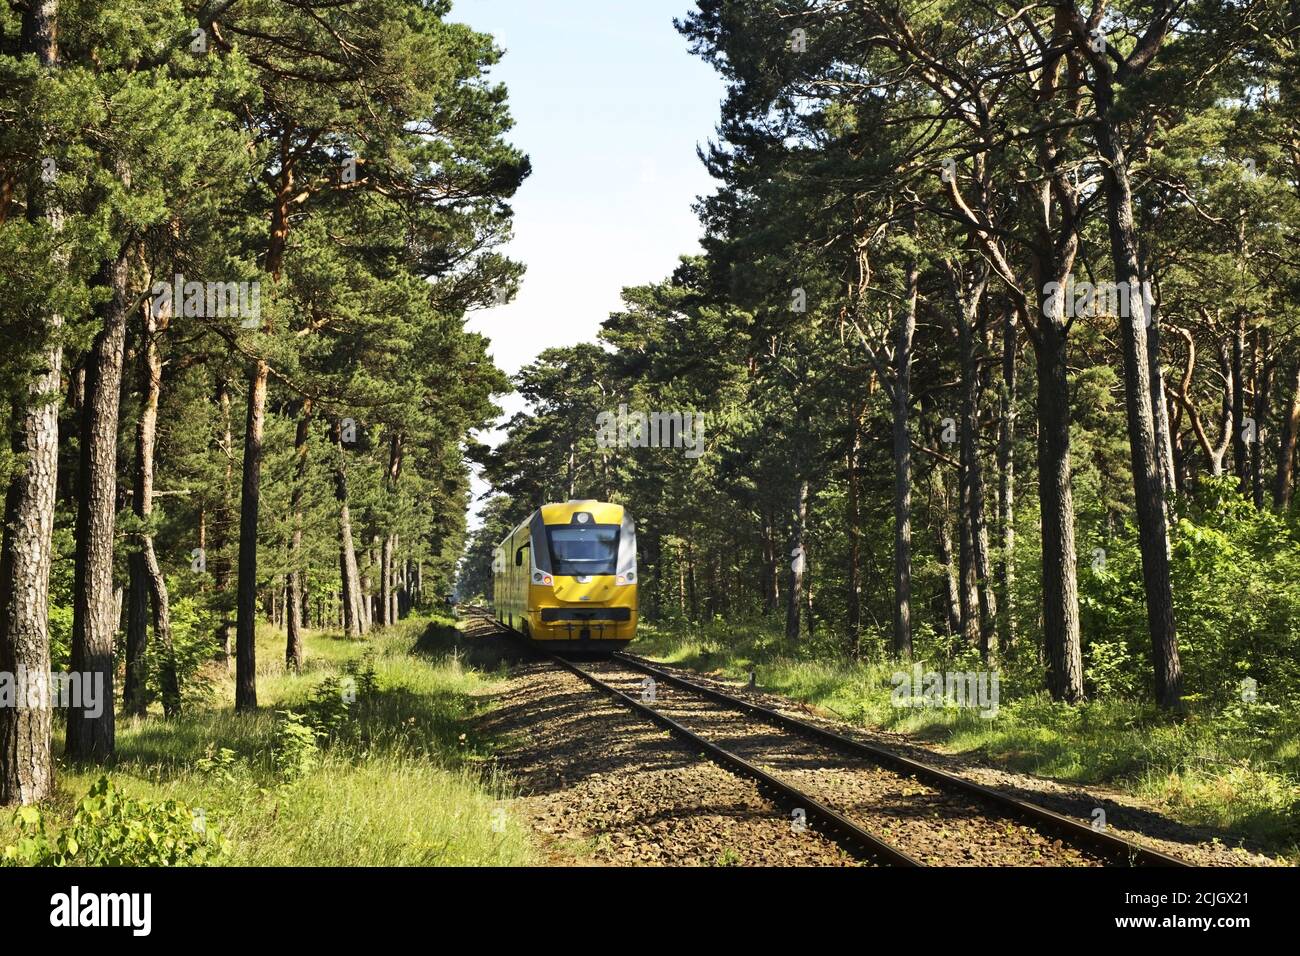 Railway in Jurata. Poland Stock Photo